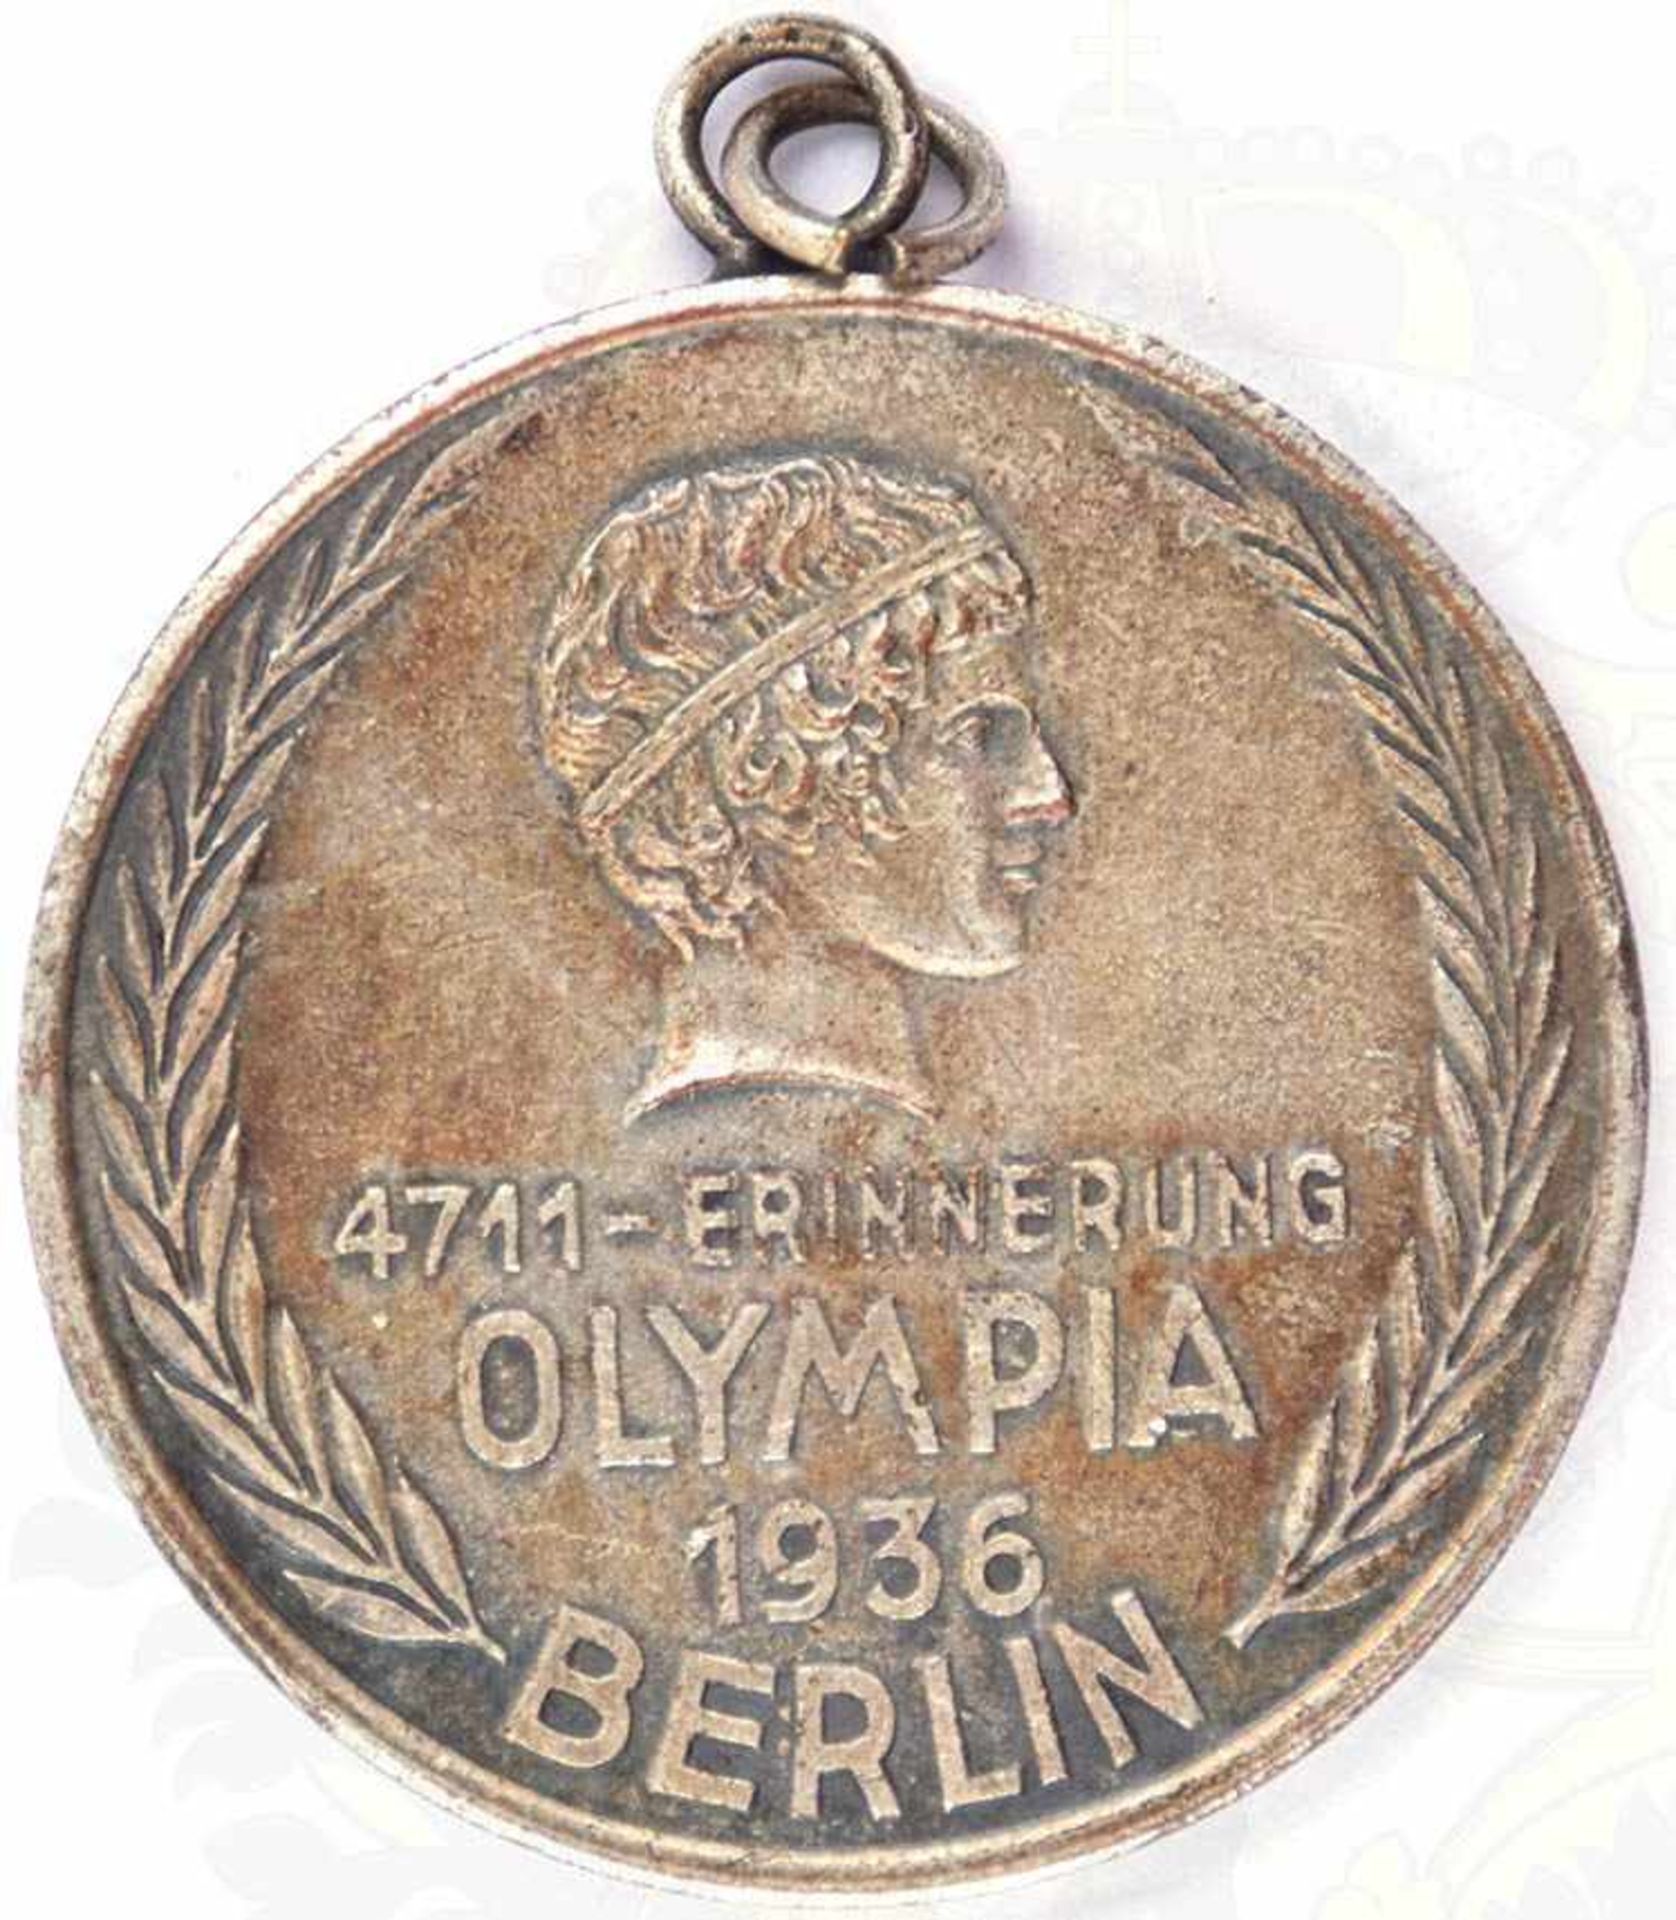 4711-ERINNERUNGSMEDAILLE OLYMPIA 1936 BERLIN, verslb., bez. „Köln Glockengasse“, Ø 35mm, an - Bild 2 aus 2